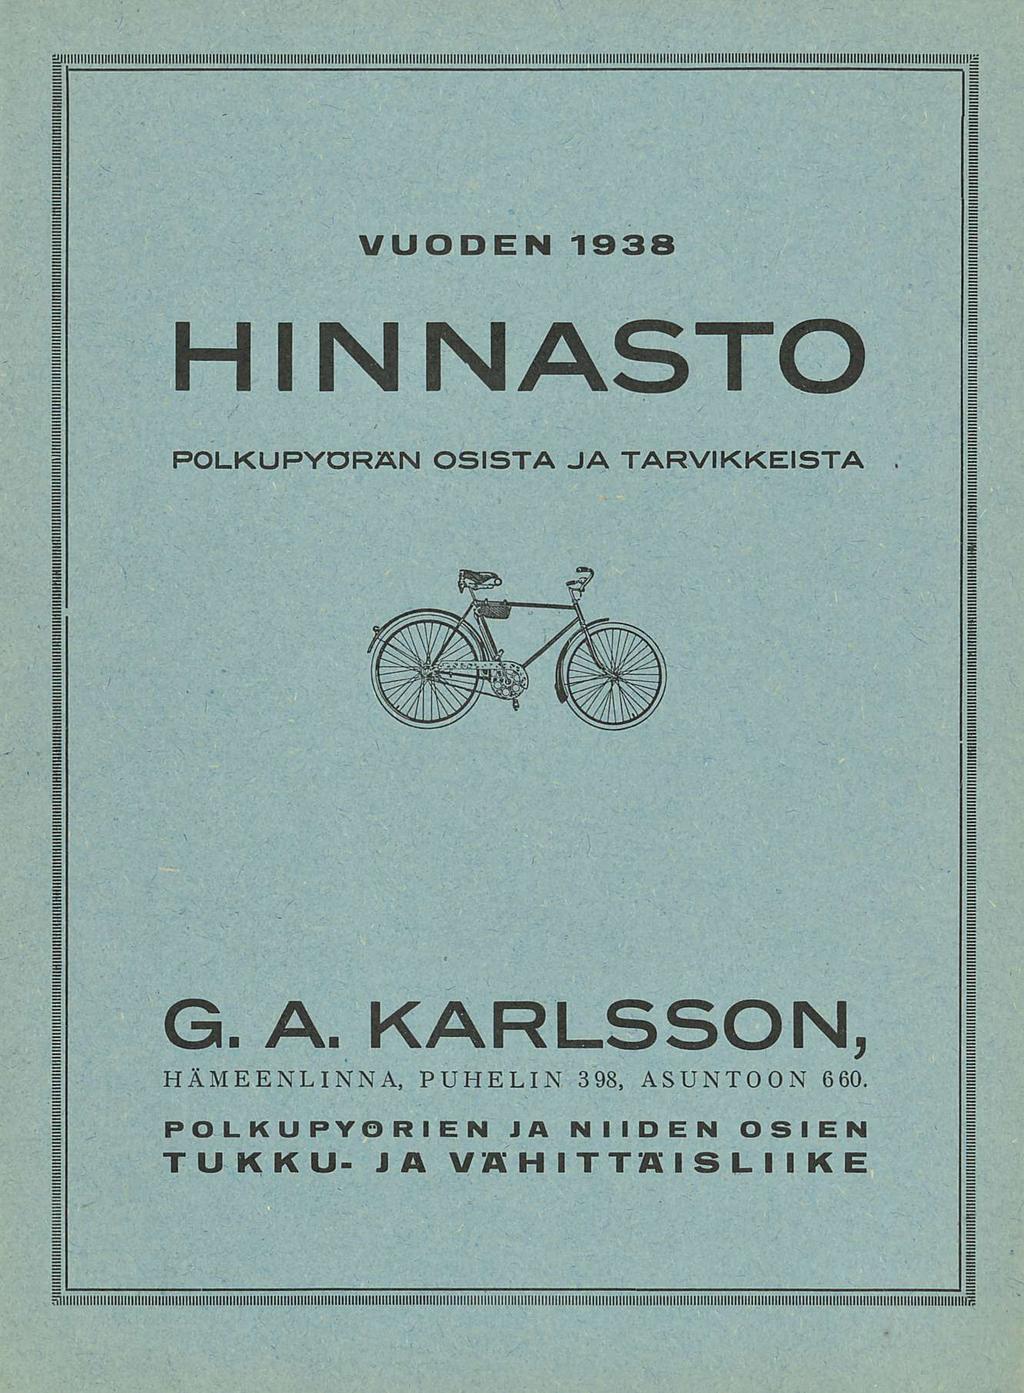 VUODEN 1938 HINNASTO POLKUPYÖRÄN OSISTA JA TARVIKKEISTA. G. A.